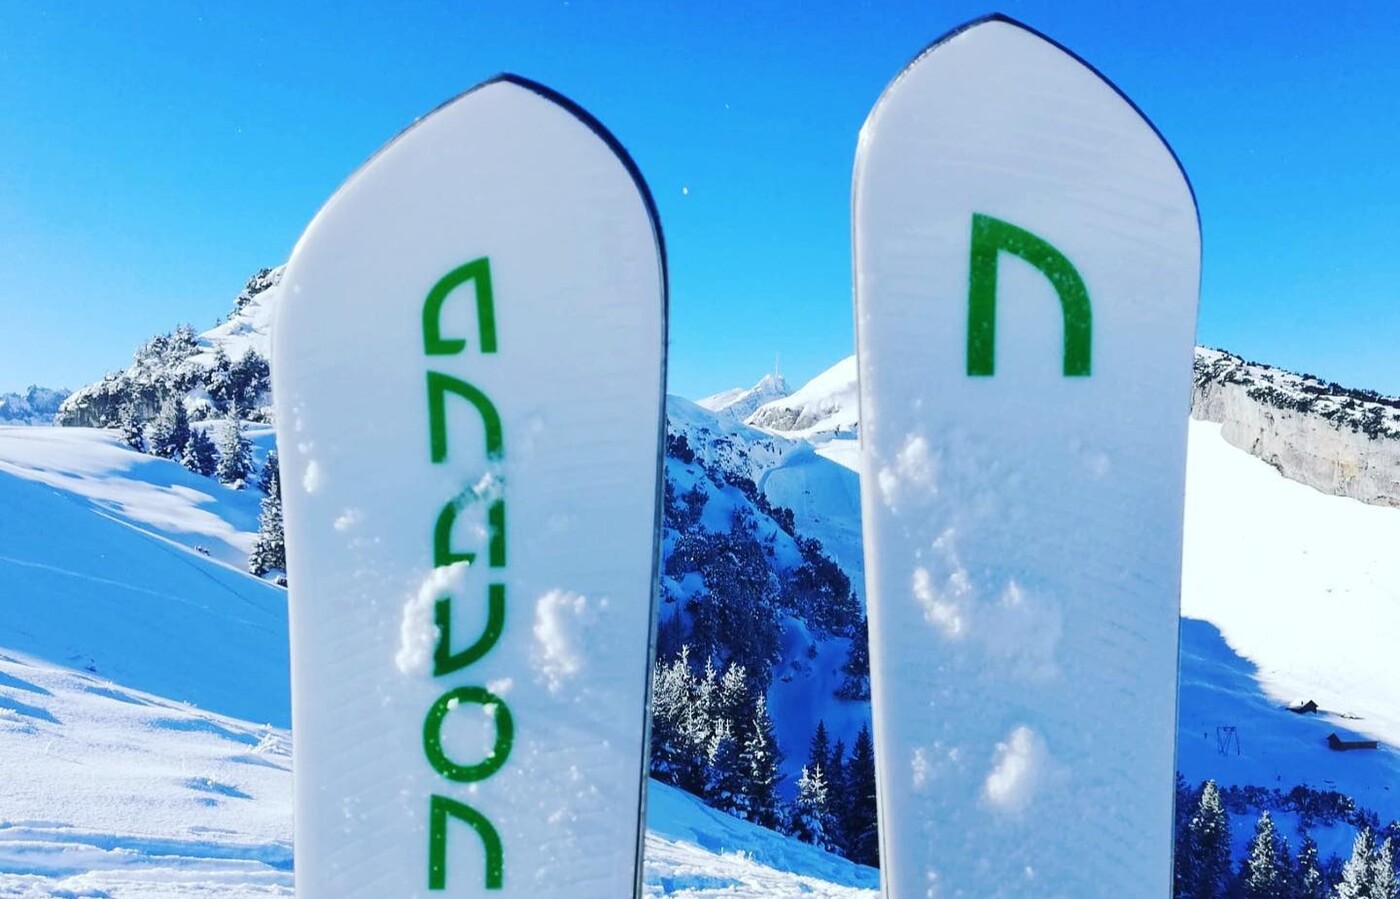 Bessere Rahmenbedingungen dank Umzug: Die Anavon-Ski werden künftig in Zizers produziert.